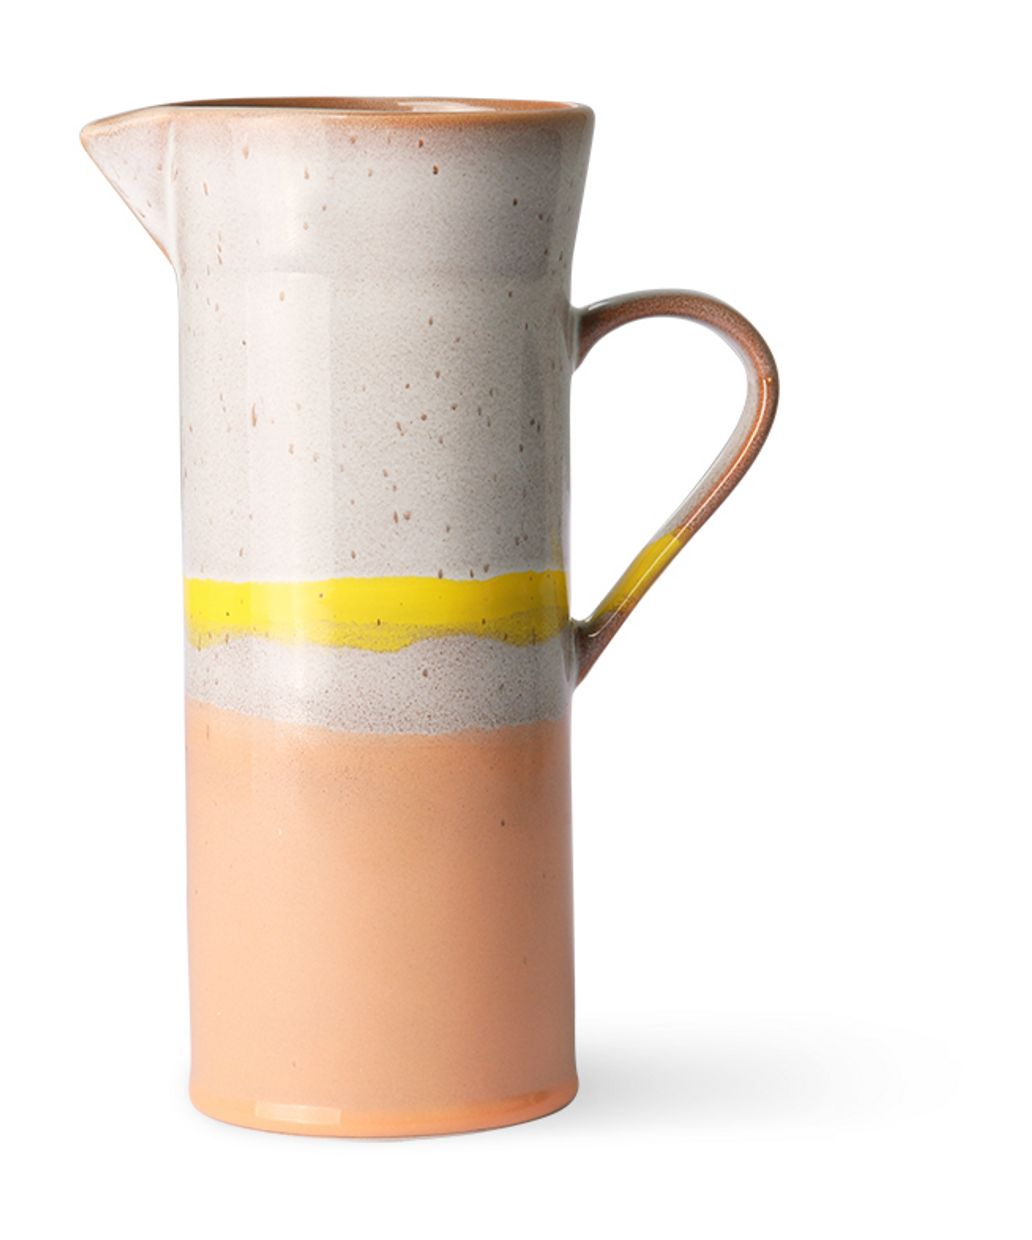 70s ceramics: jug, sunrise